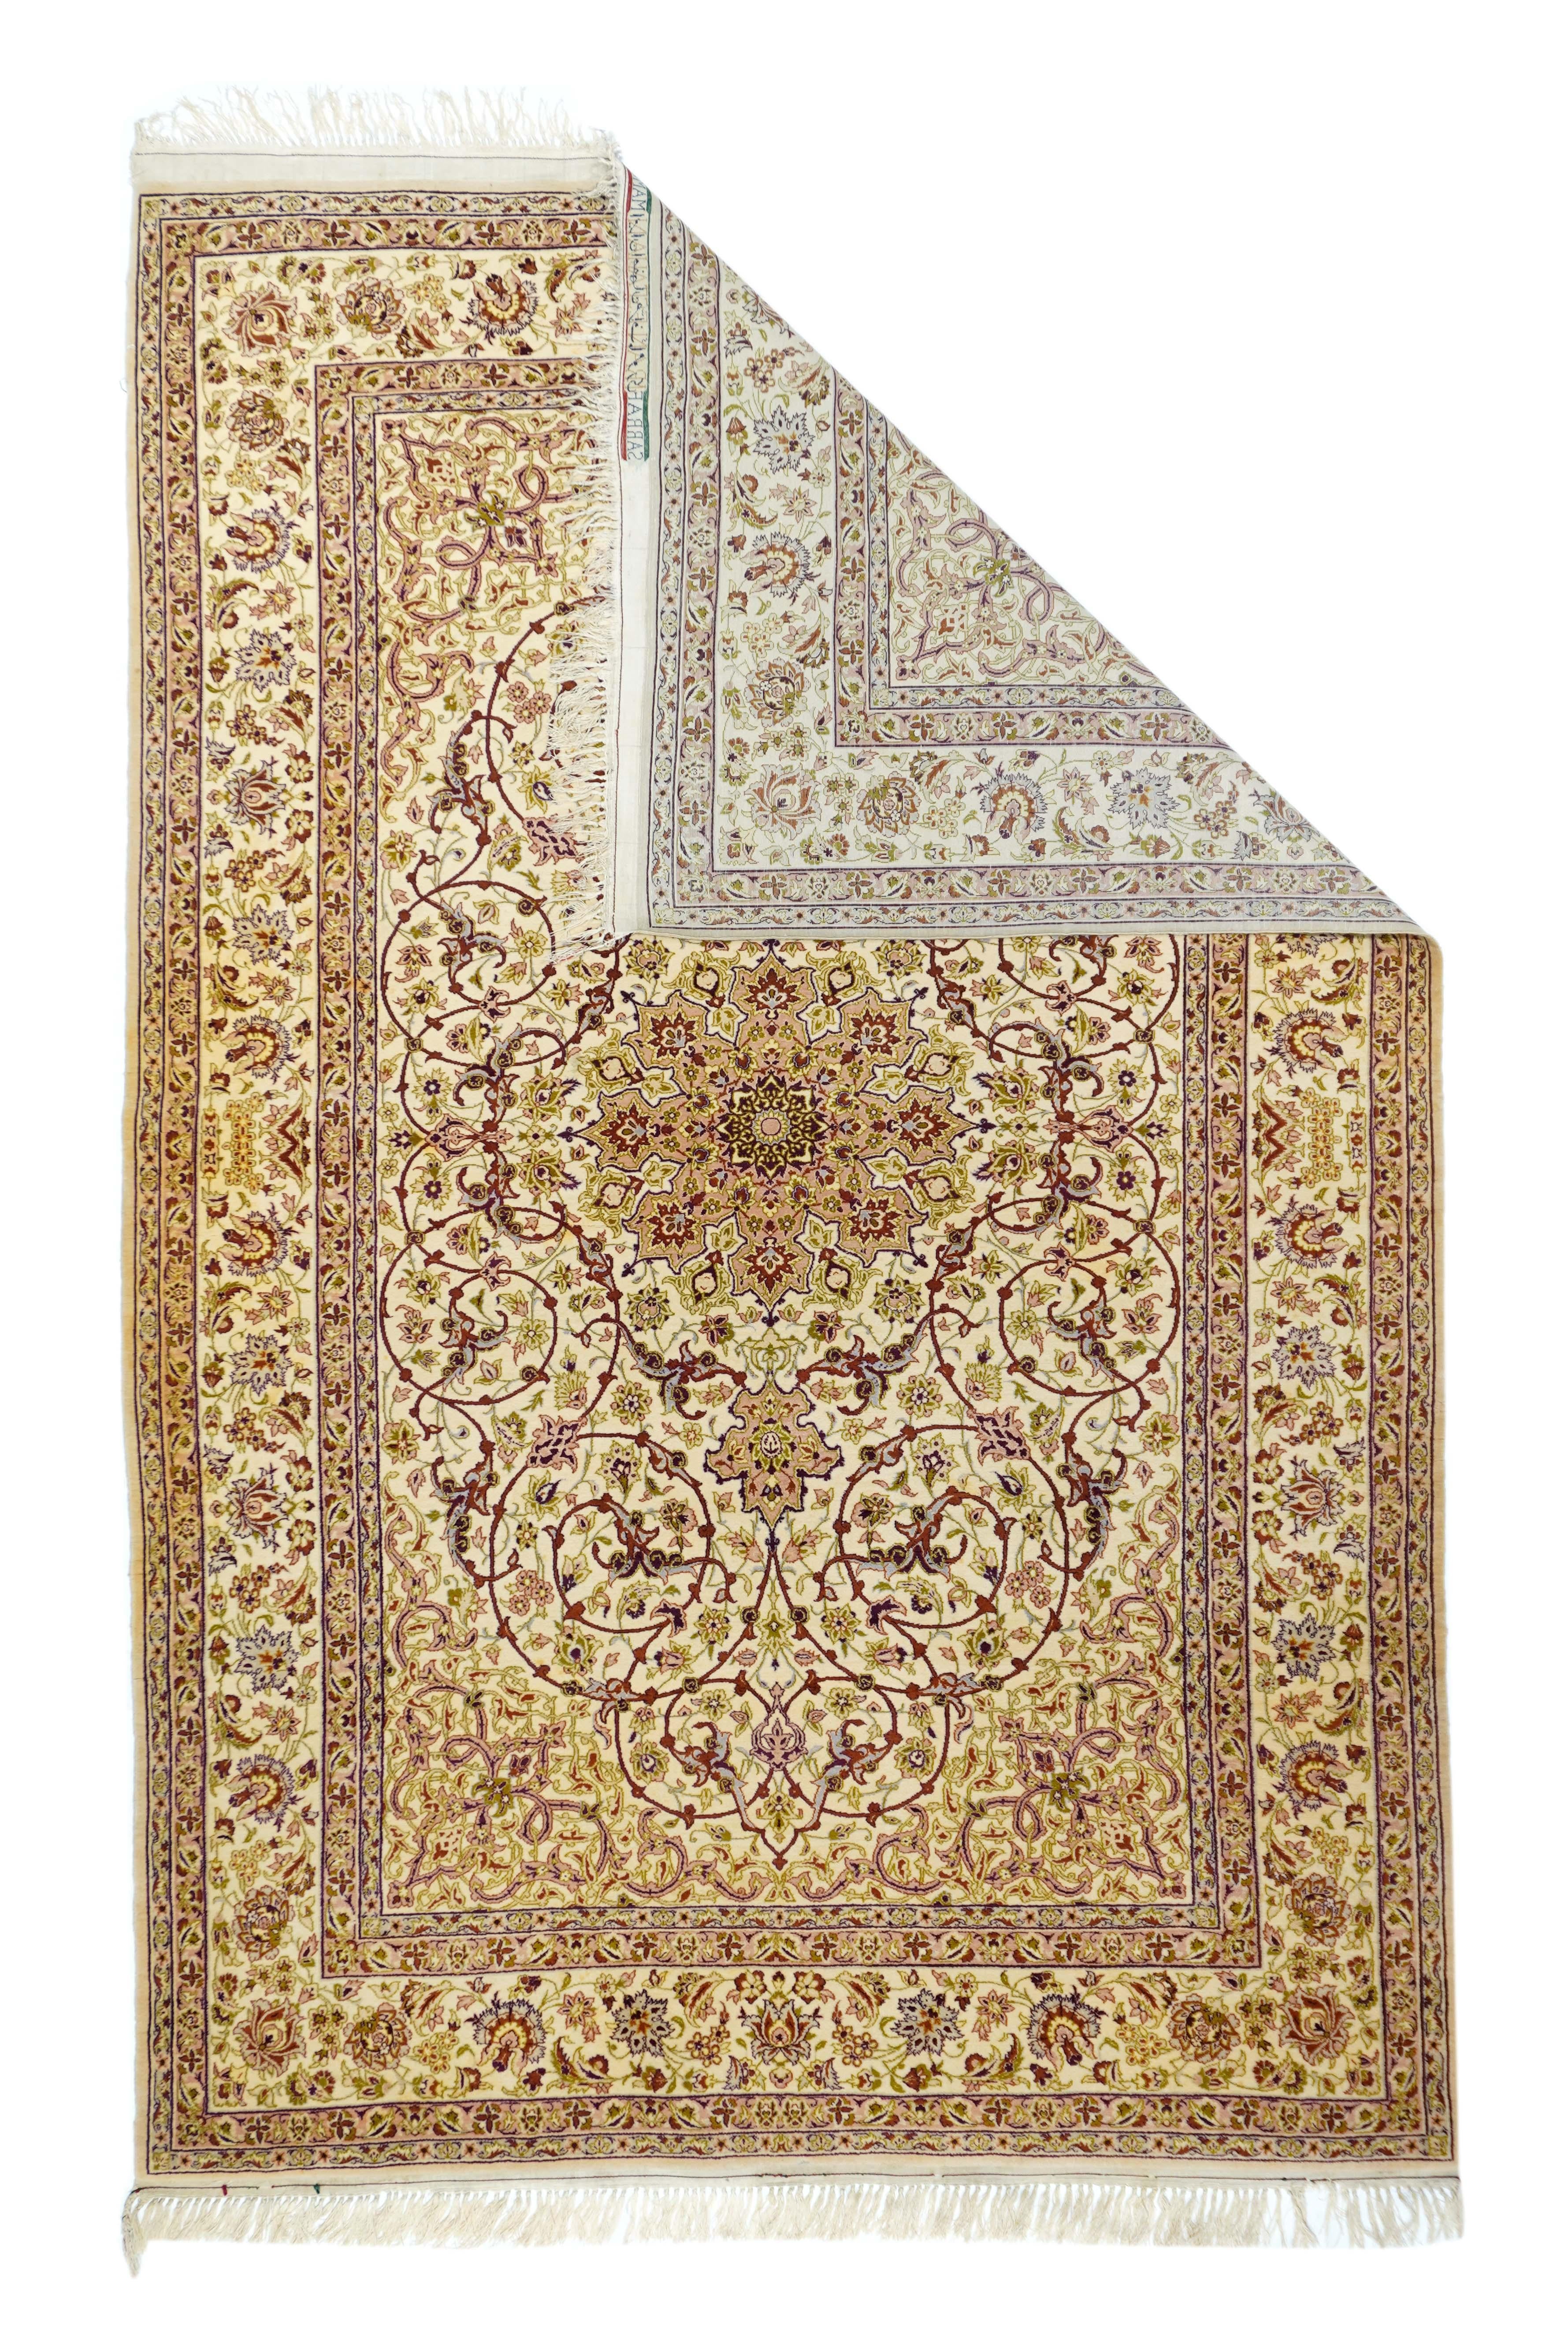 Vintage Isfahan Teppich misst 4'10'' x 7'9''. Signiert Sarafian, Isfahan Aus dem erstklassigen Sarafian-Atelier in dieser alten zentralpersischen Hauptstadt, signiert sowohl in Farsi als auch in Englisch und wahrscheinlich für den amerikanischen